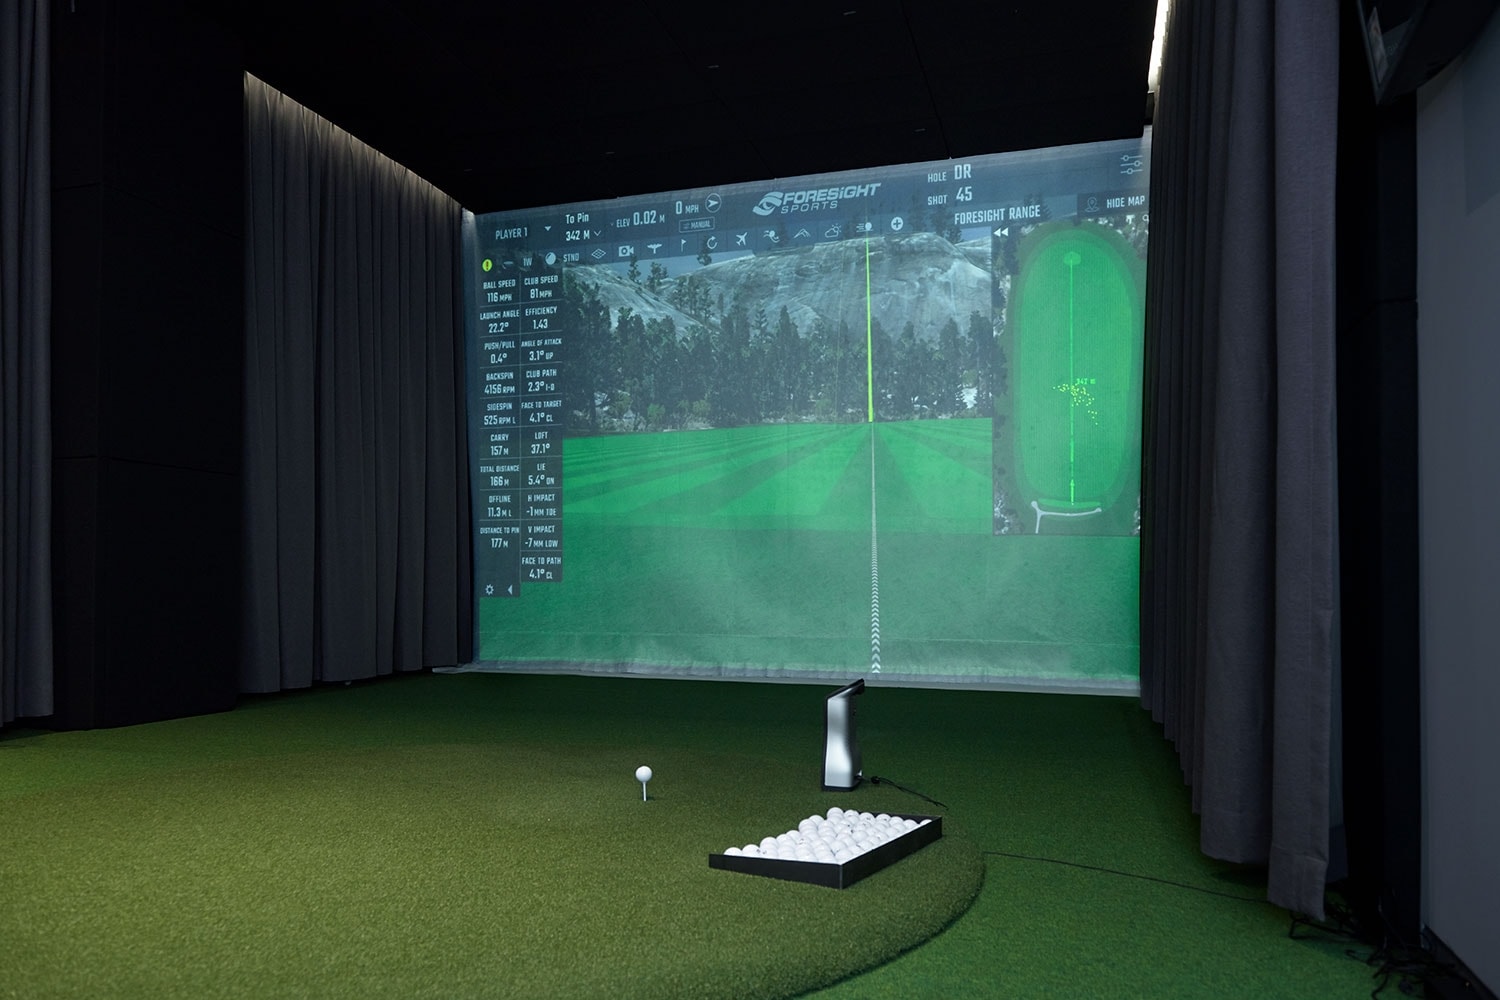 푸마, 골프의 모든 것을 담은 공간 ‘코브라 푸마 하우스’ 오픈 puma golf cobra